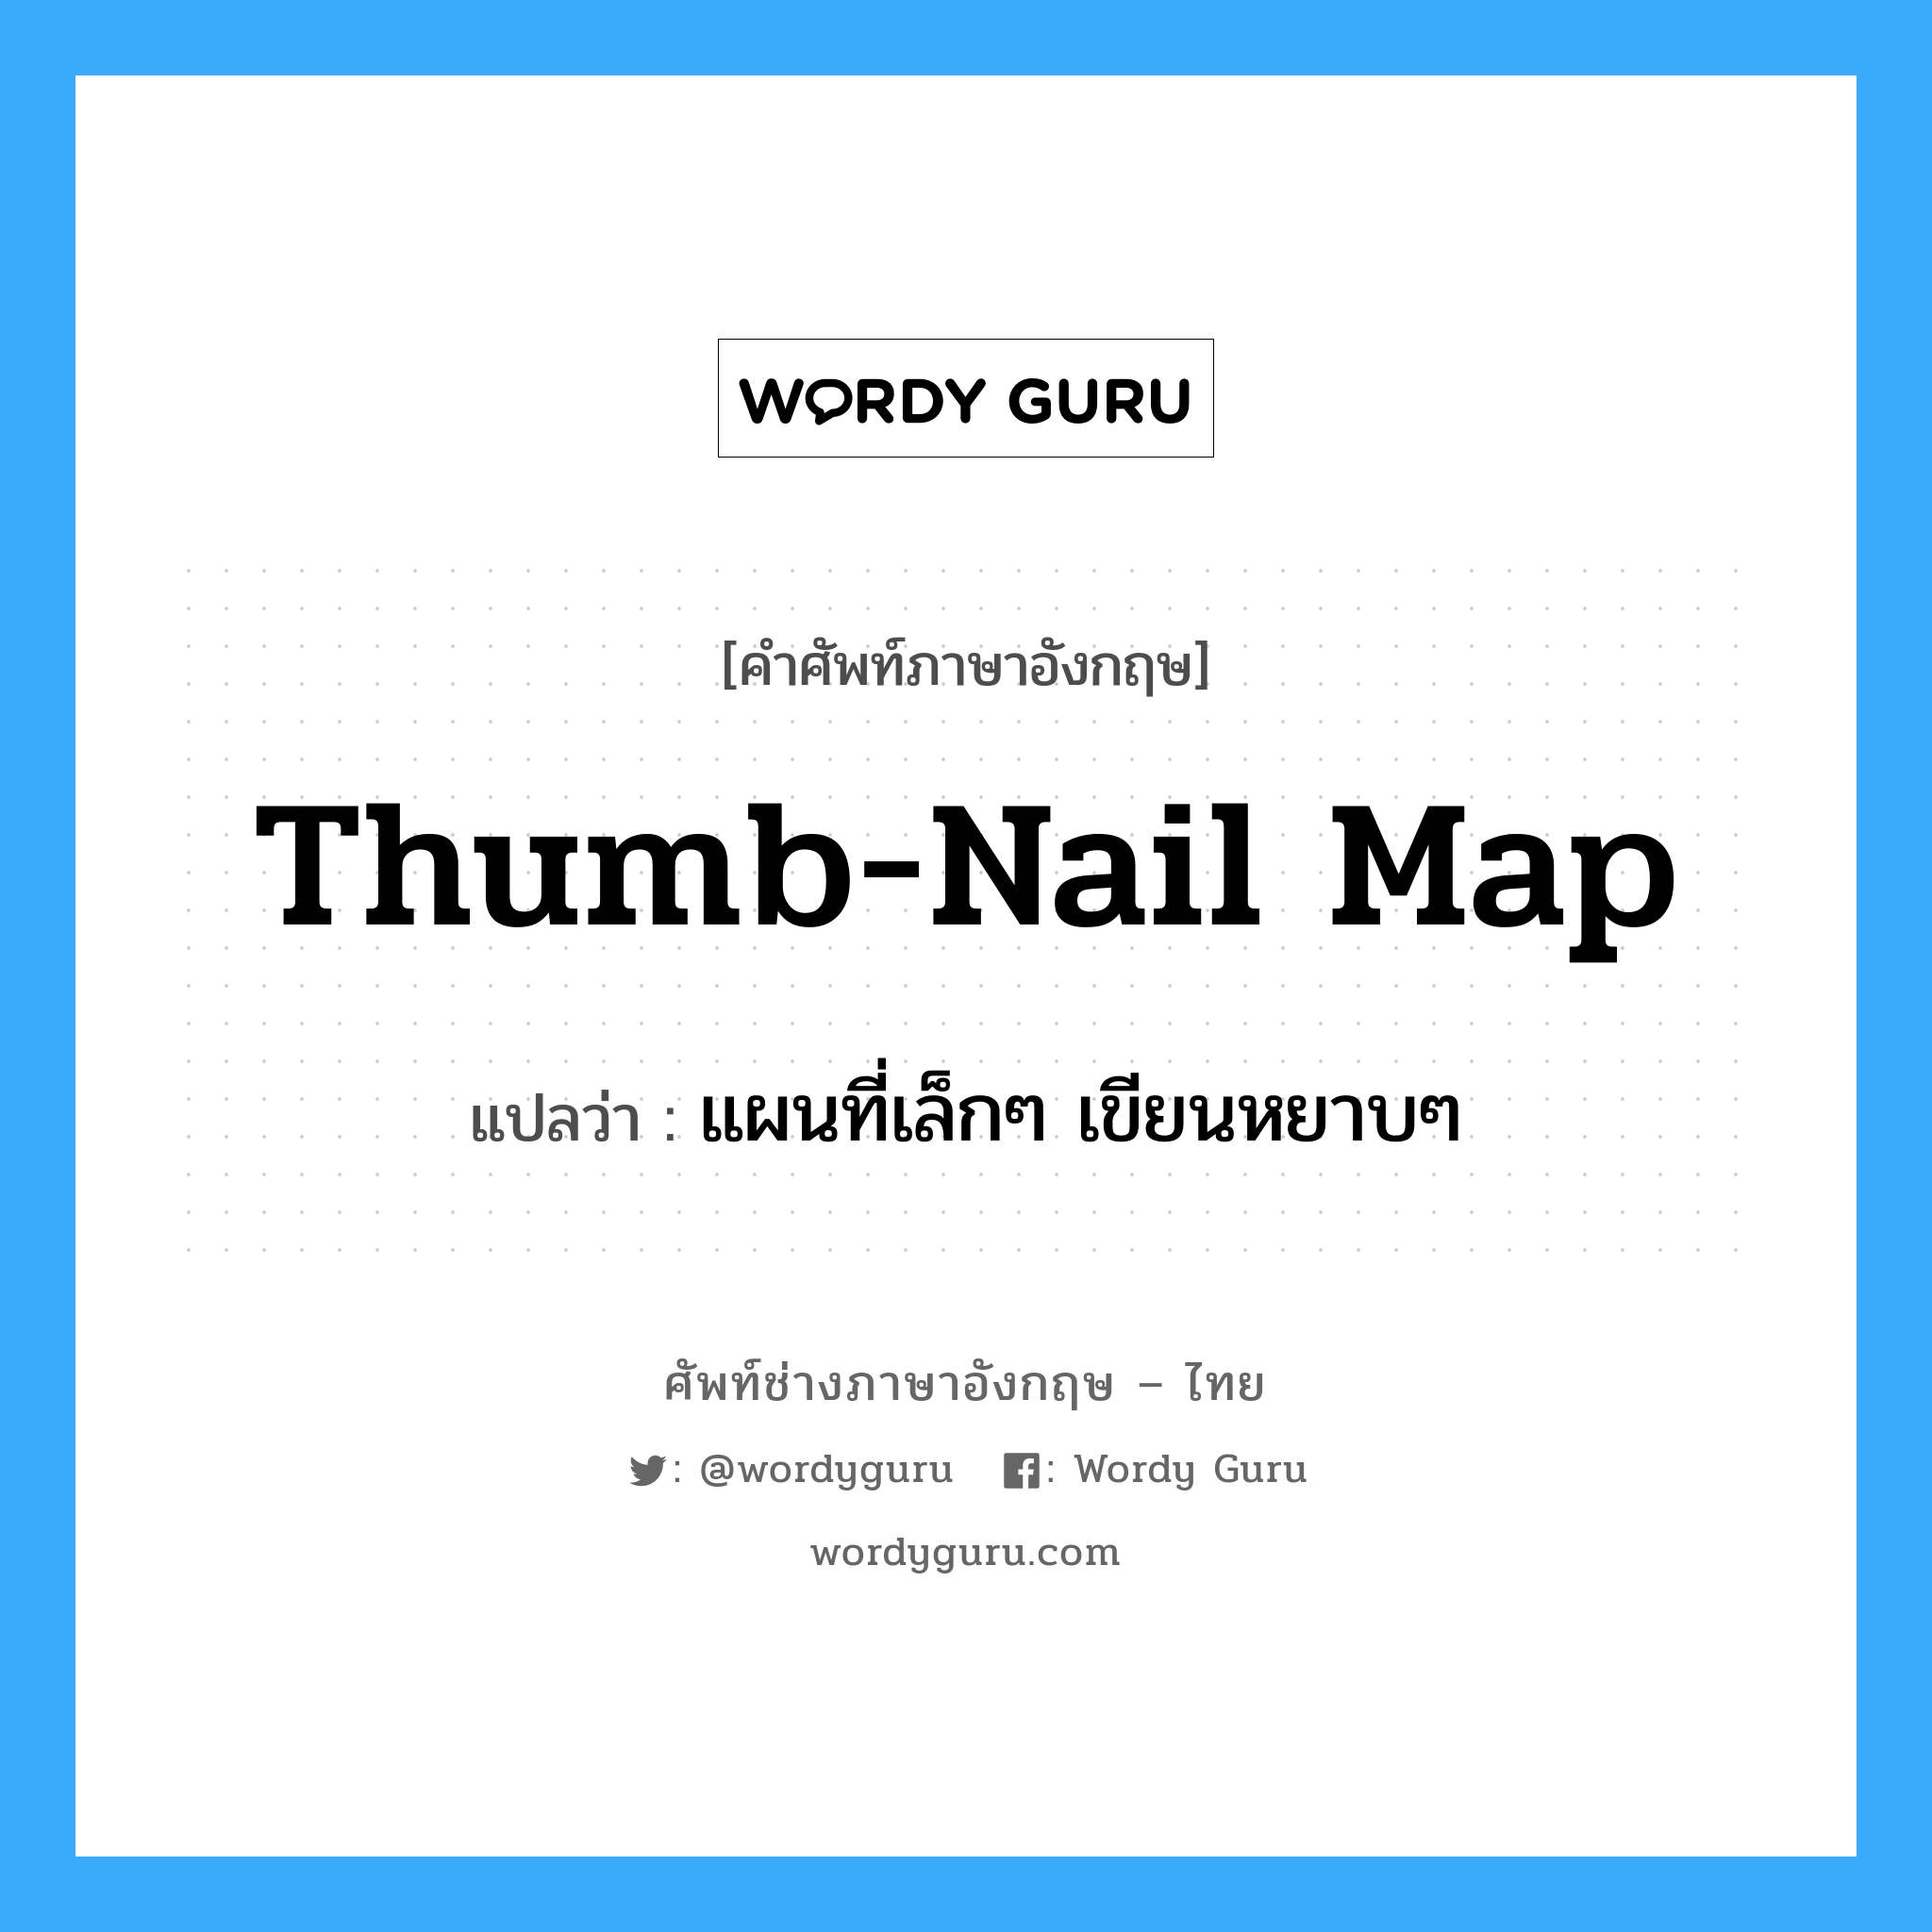 thumb-nail map แปลว่า?, คำศัพท์ช่างภาษาอังกฤษ - ไทย thumb-nail map คำศัพท์ภาษาอังกฤษ thumb-nail map แปลว่า แผนที่เล็กๆ เขียนหยาบๆ